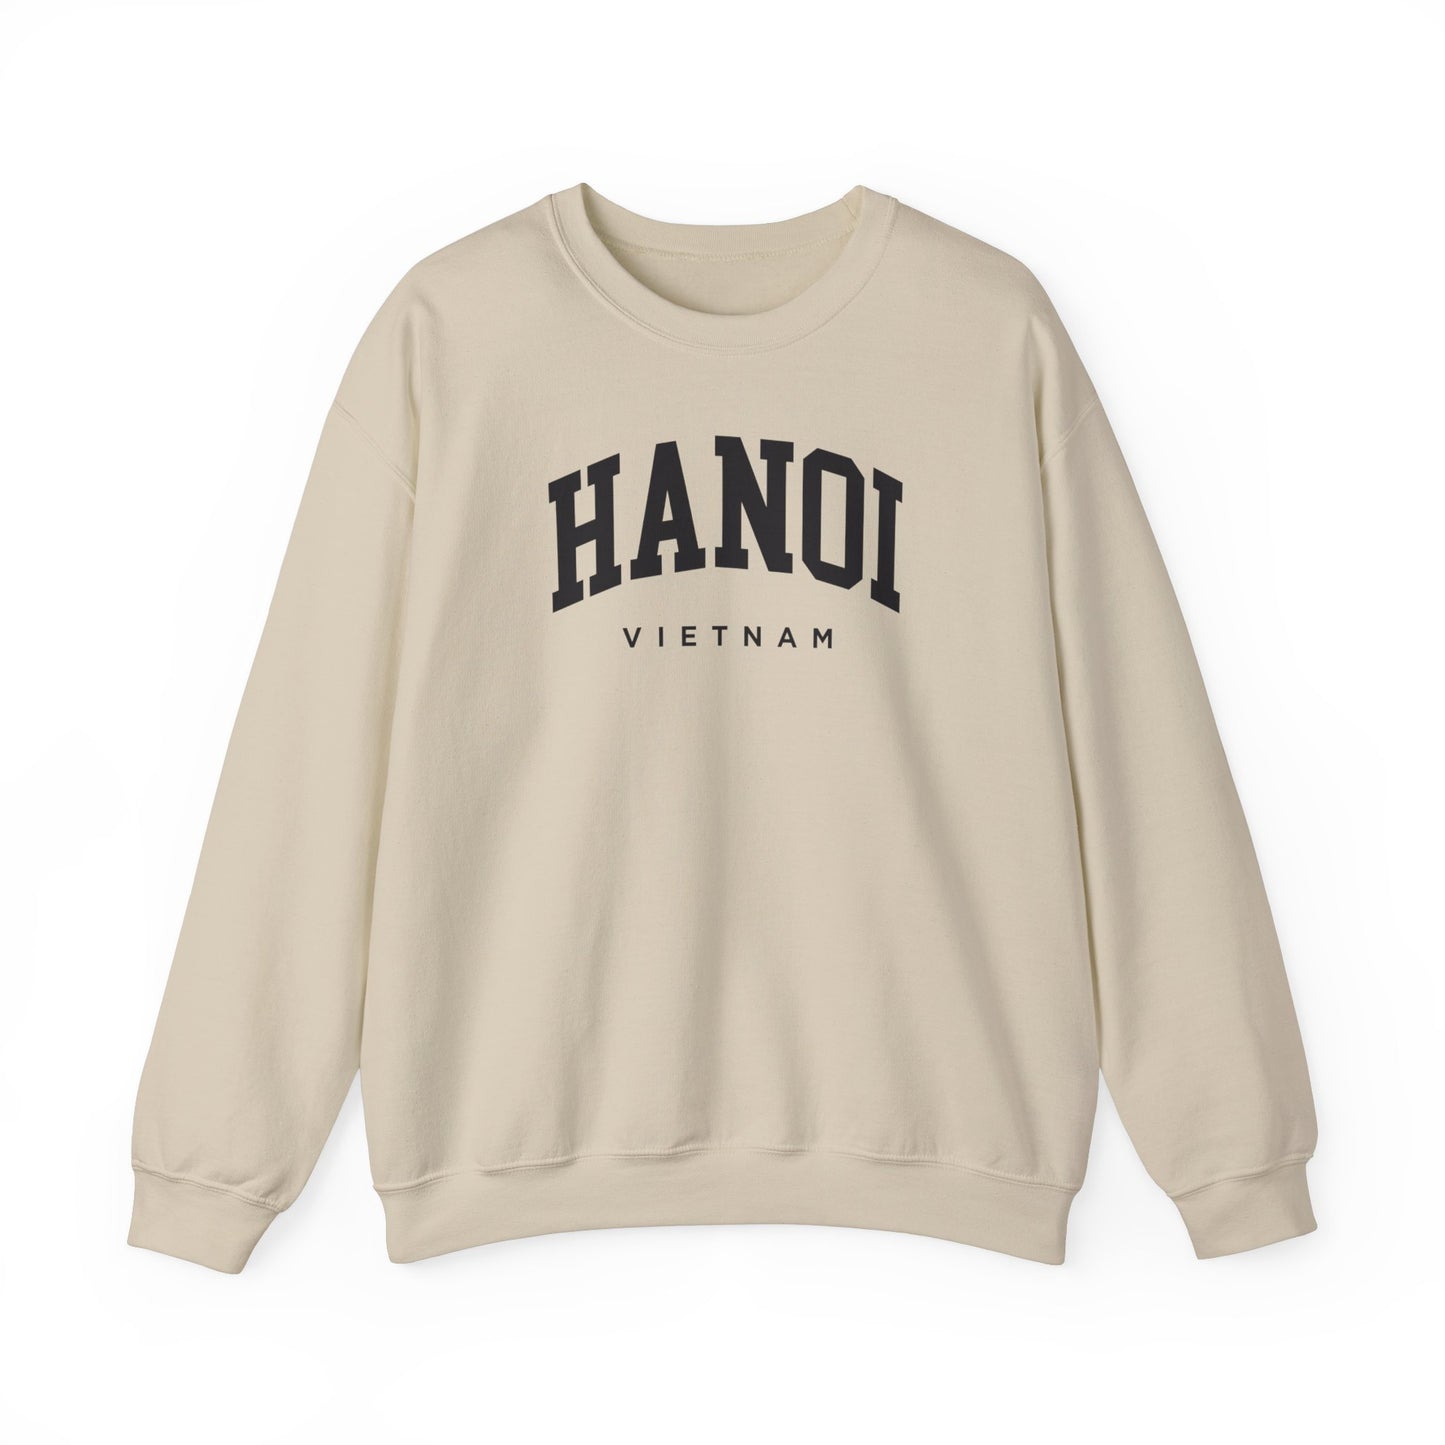 Hanoi Vietnam Sweatshirt